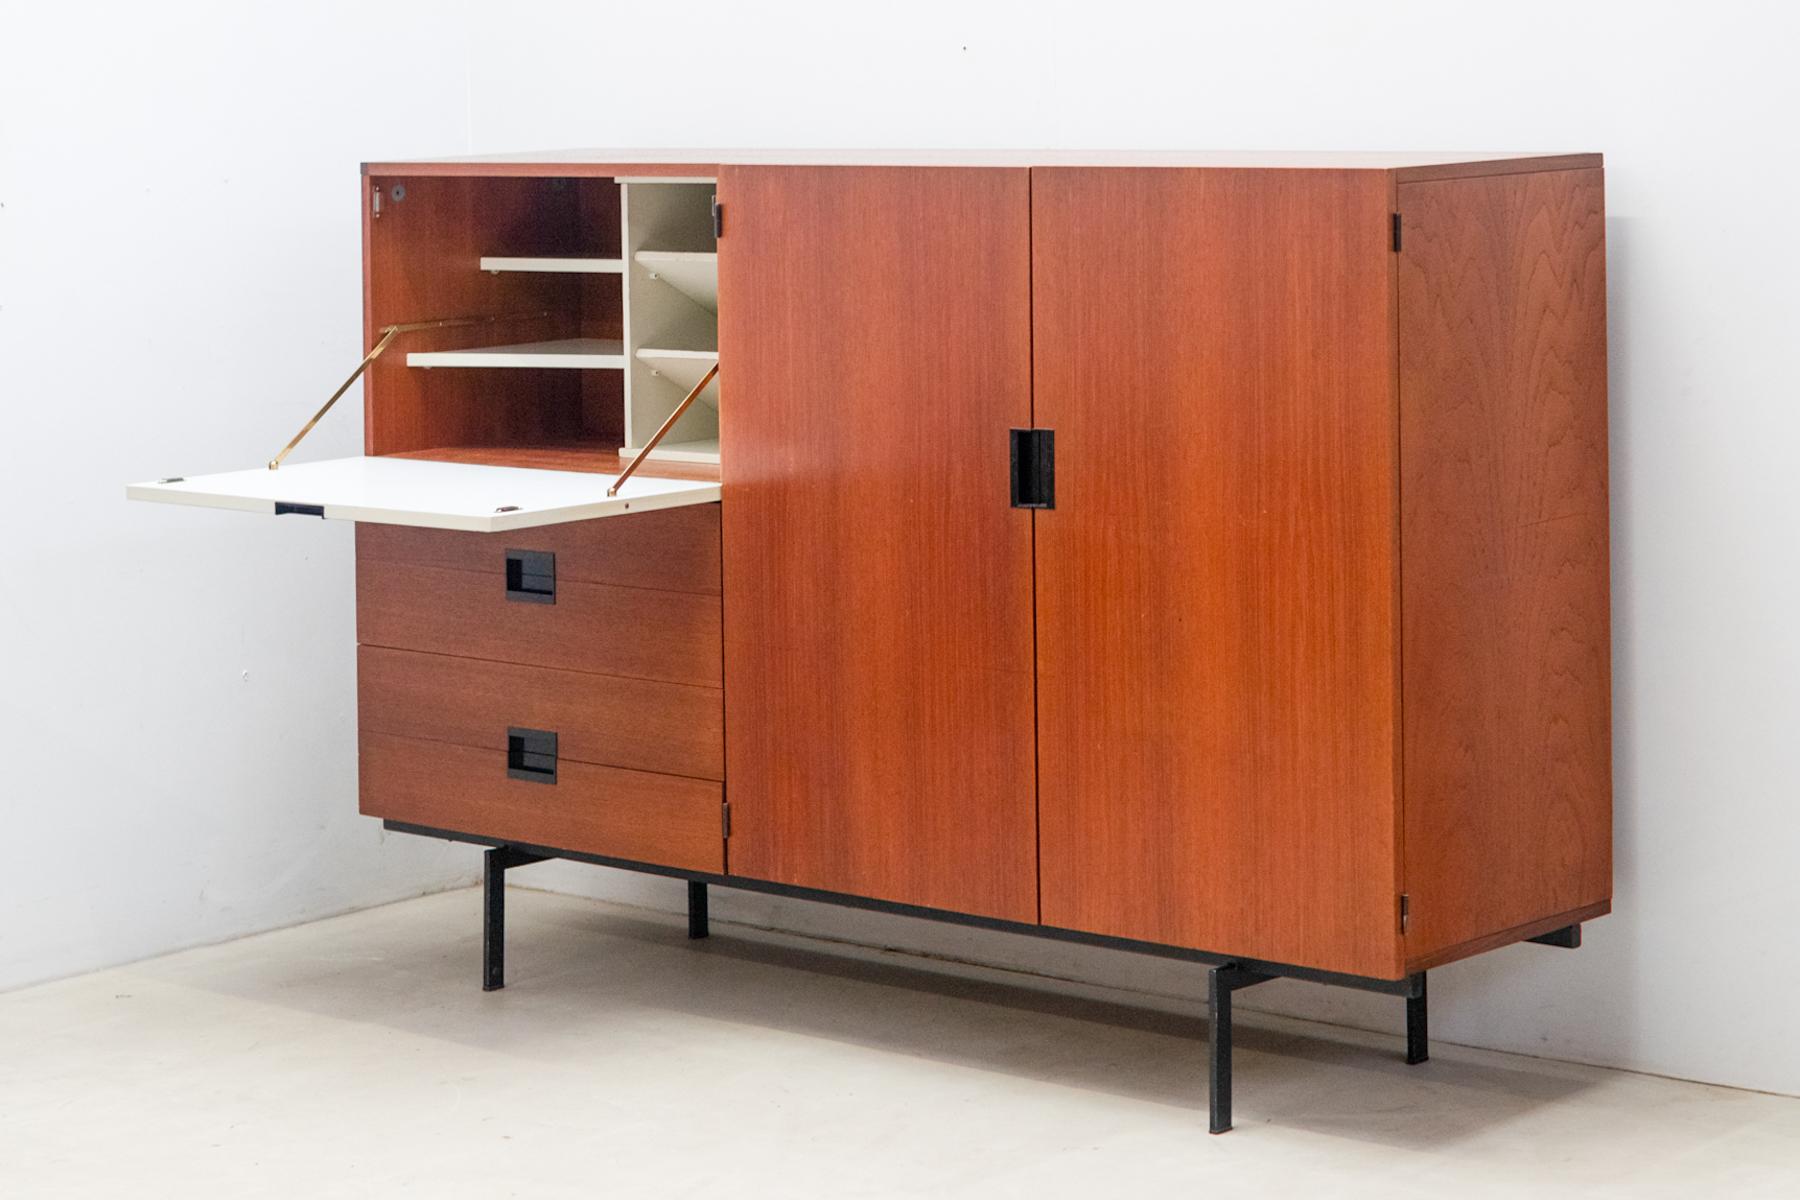 Le meuble haut CU08, conçu par Cees Braakman pour Pastoe en 1958, est fabriqué en bois de teck et doté d'une porte pliante laquée blanche. 
Il comprend également quatre tiroirs en dessous et deux portes à droite. 
Faisant partie de la série